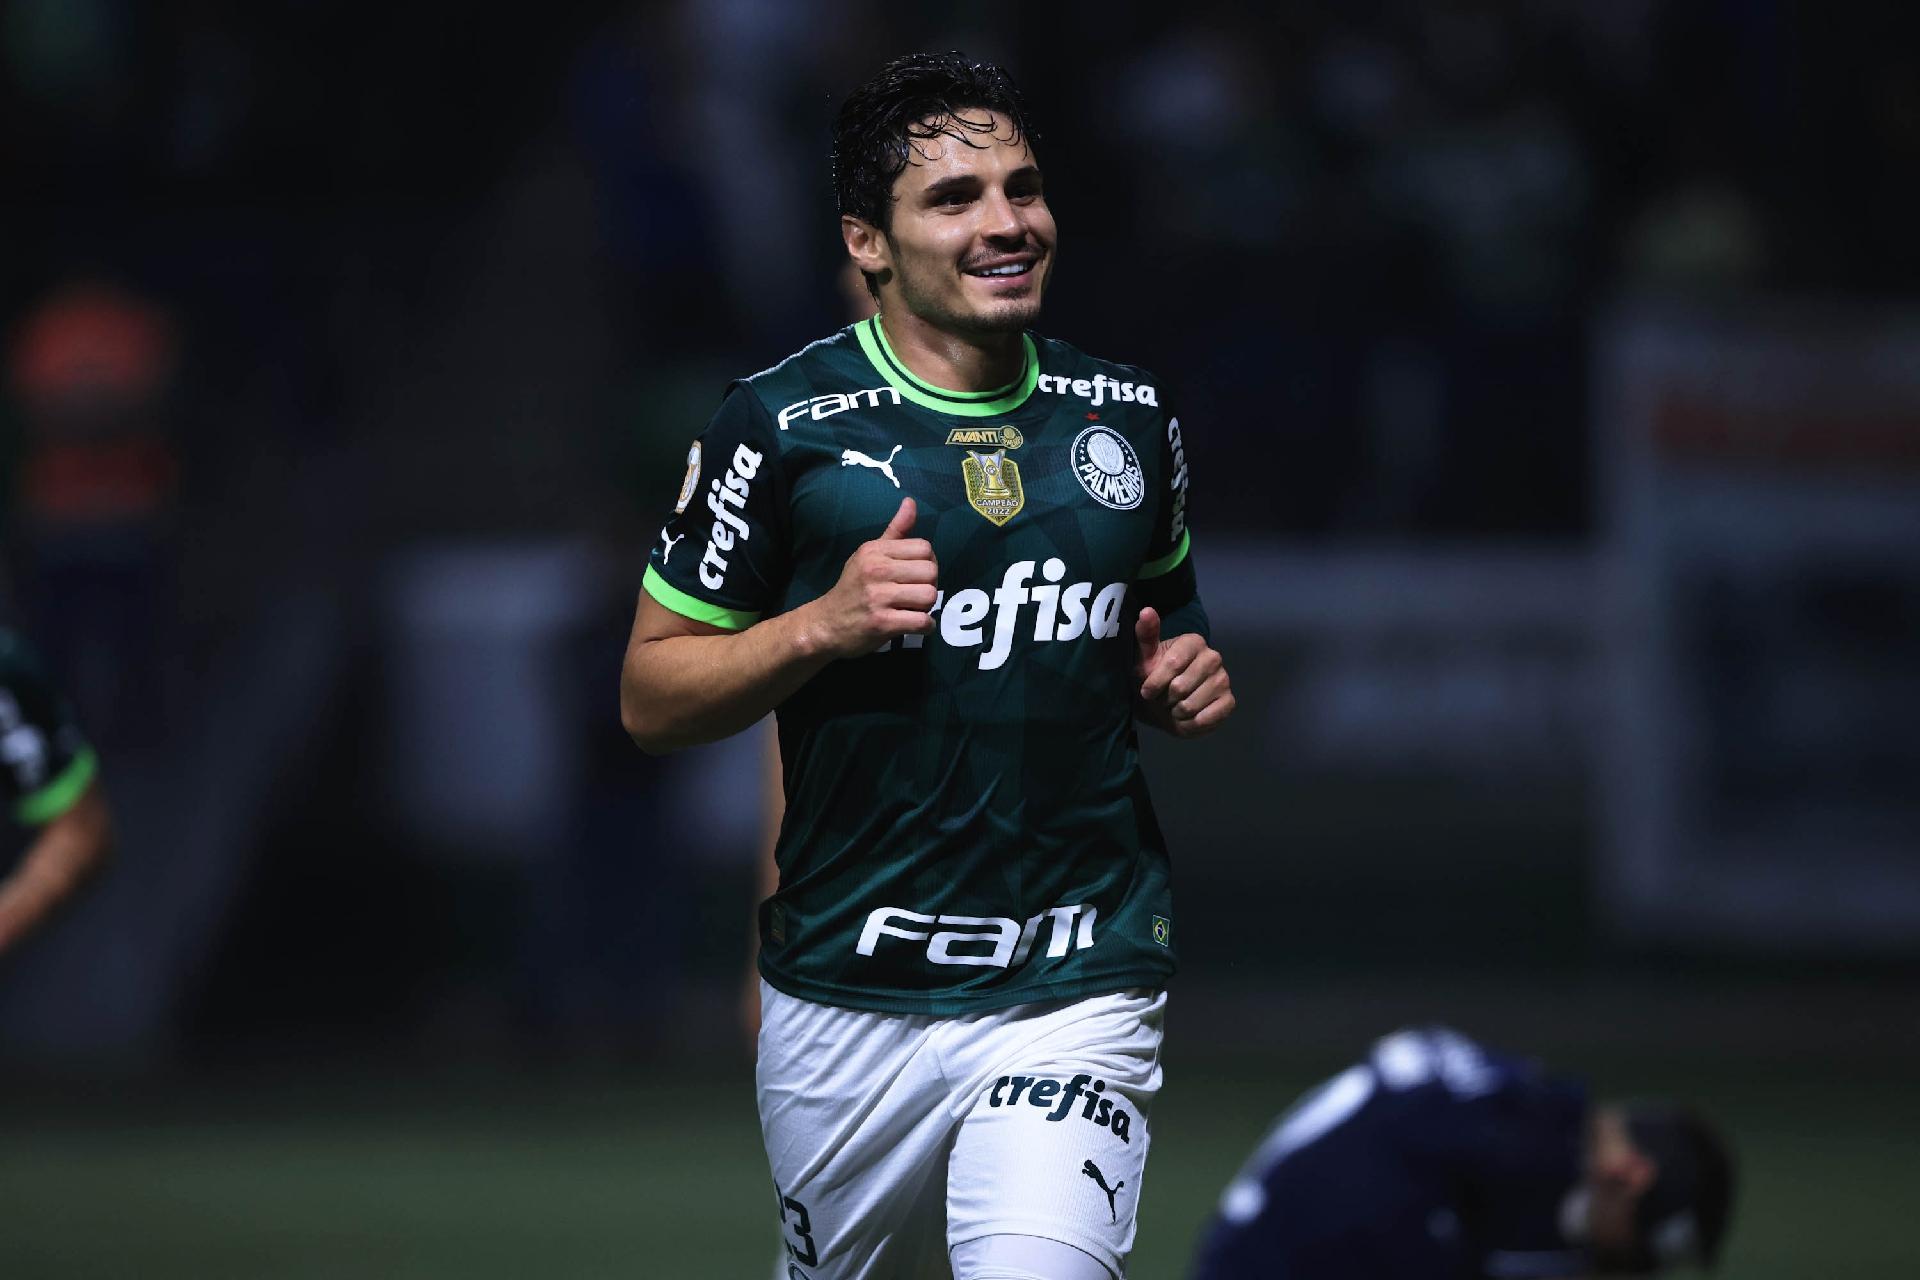 Assistir Santos x Palmeiras ao vivo grátis 11/05/2023